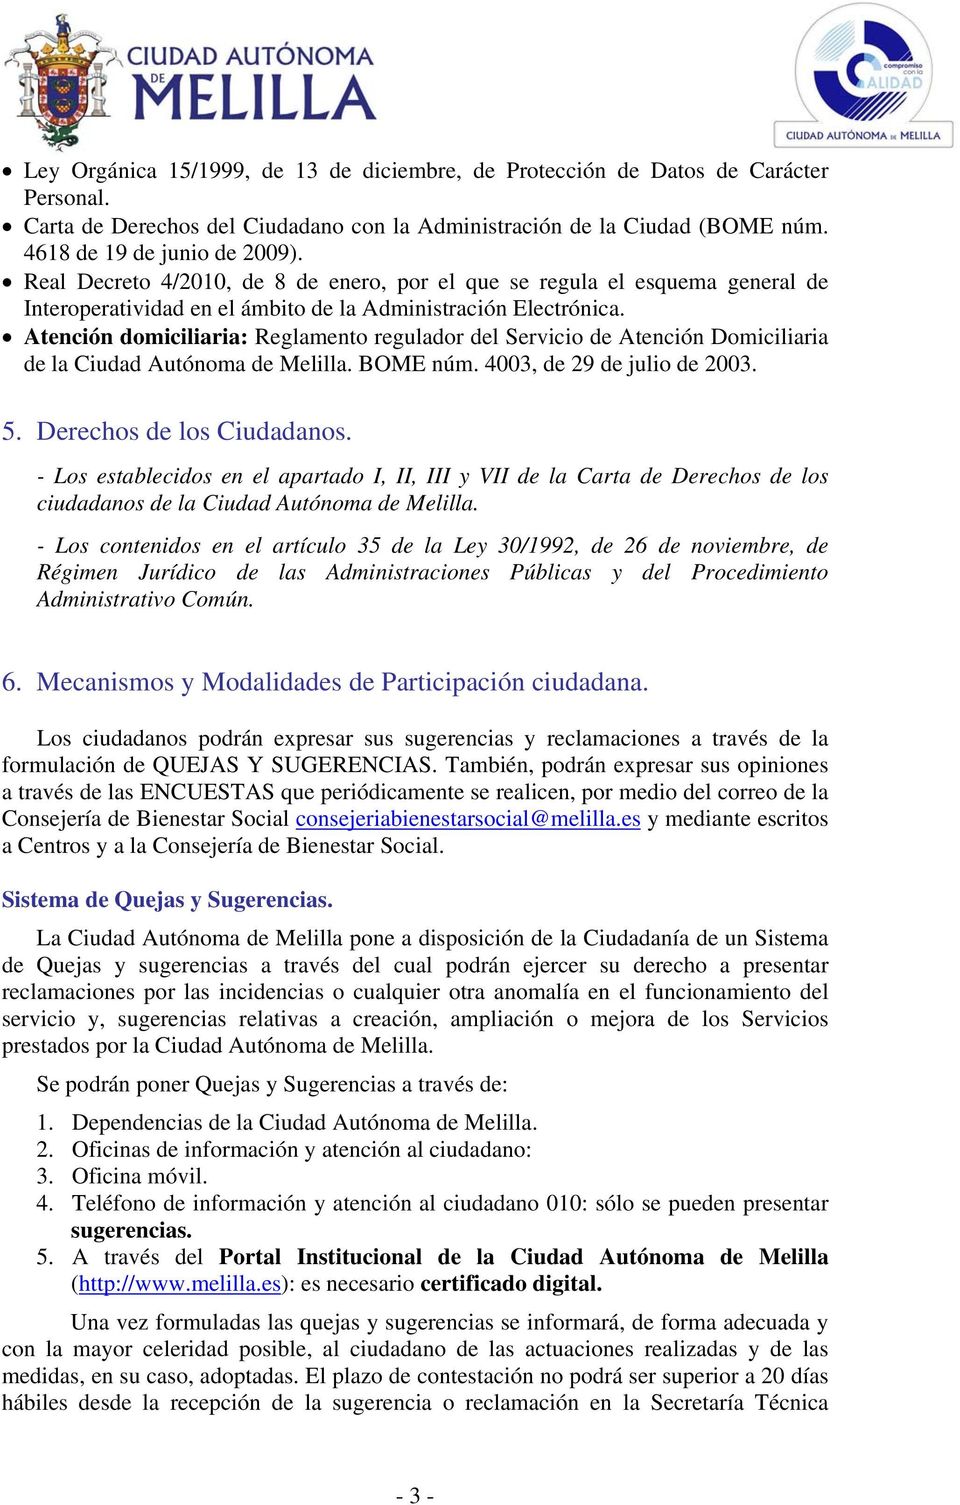 Atención domiciliaria: Reglamento regulador del Servicio de Atención Domiciliaria de la Ciudad Autónoma de Melilla. BOME núm. 4003, de 29 de julio de 2003. 5. Derechos de los Ciudadanos.